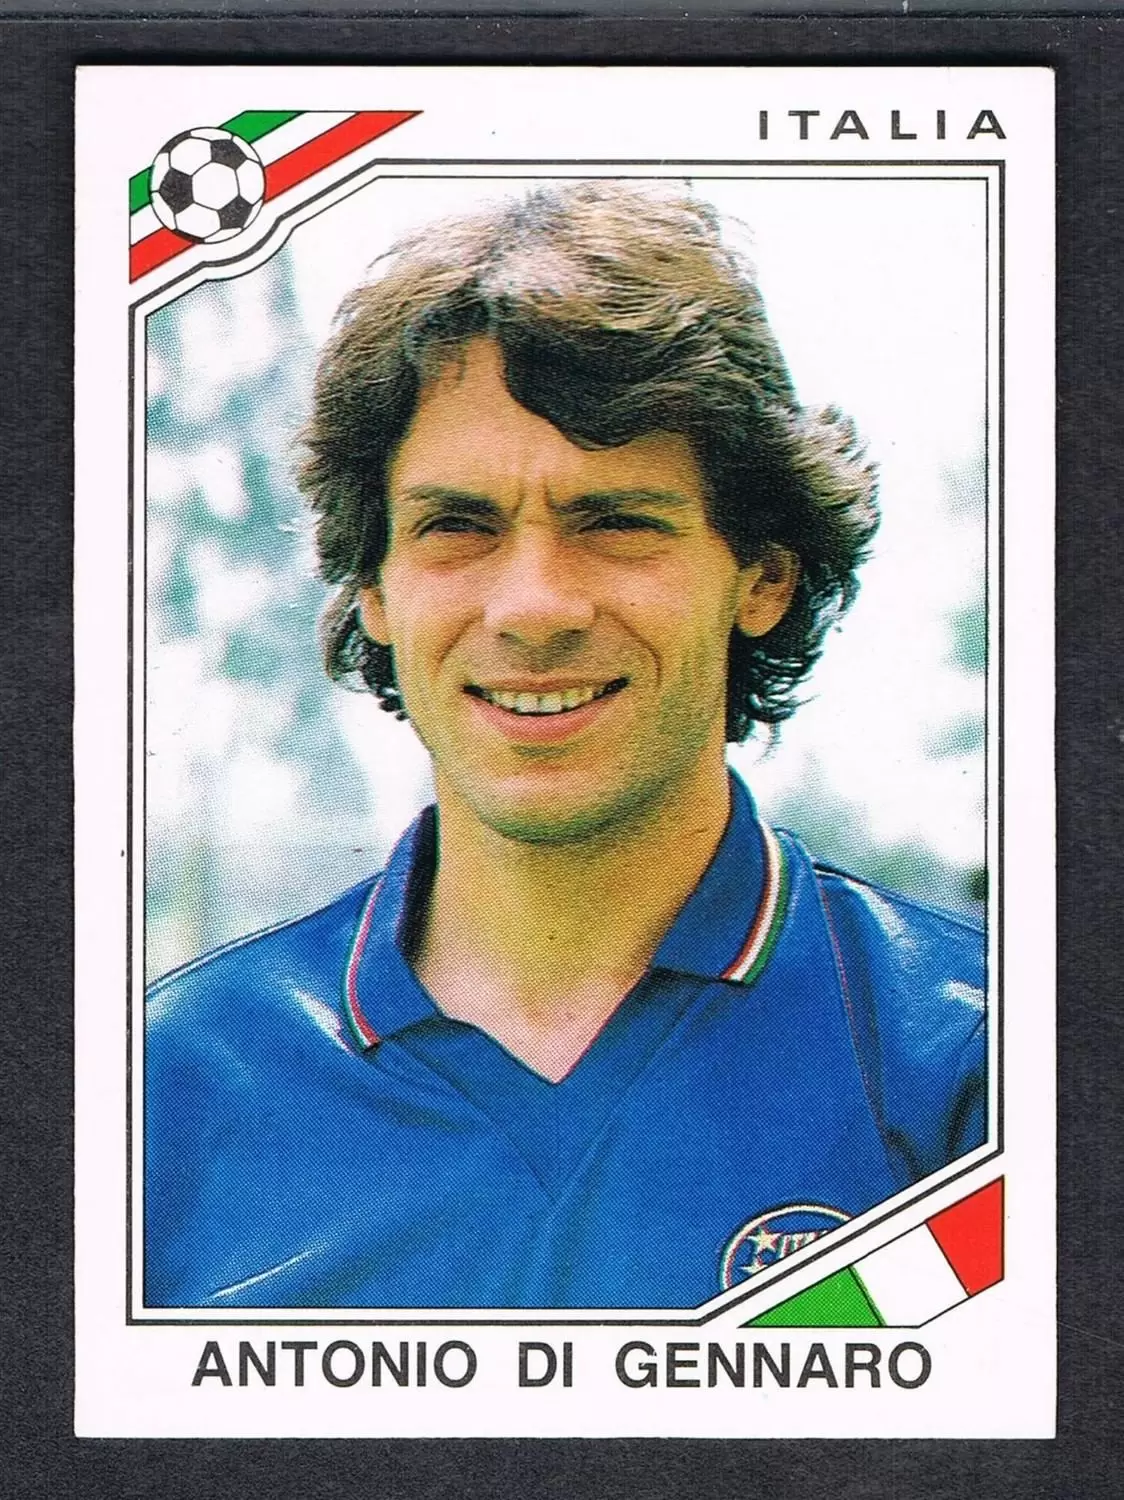 Mexico 86 World Cup - Antonio Di Gennaro - Italie